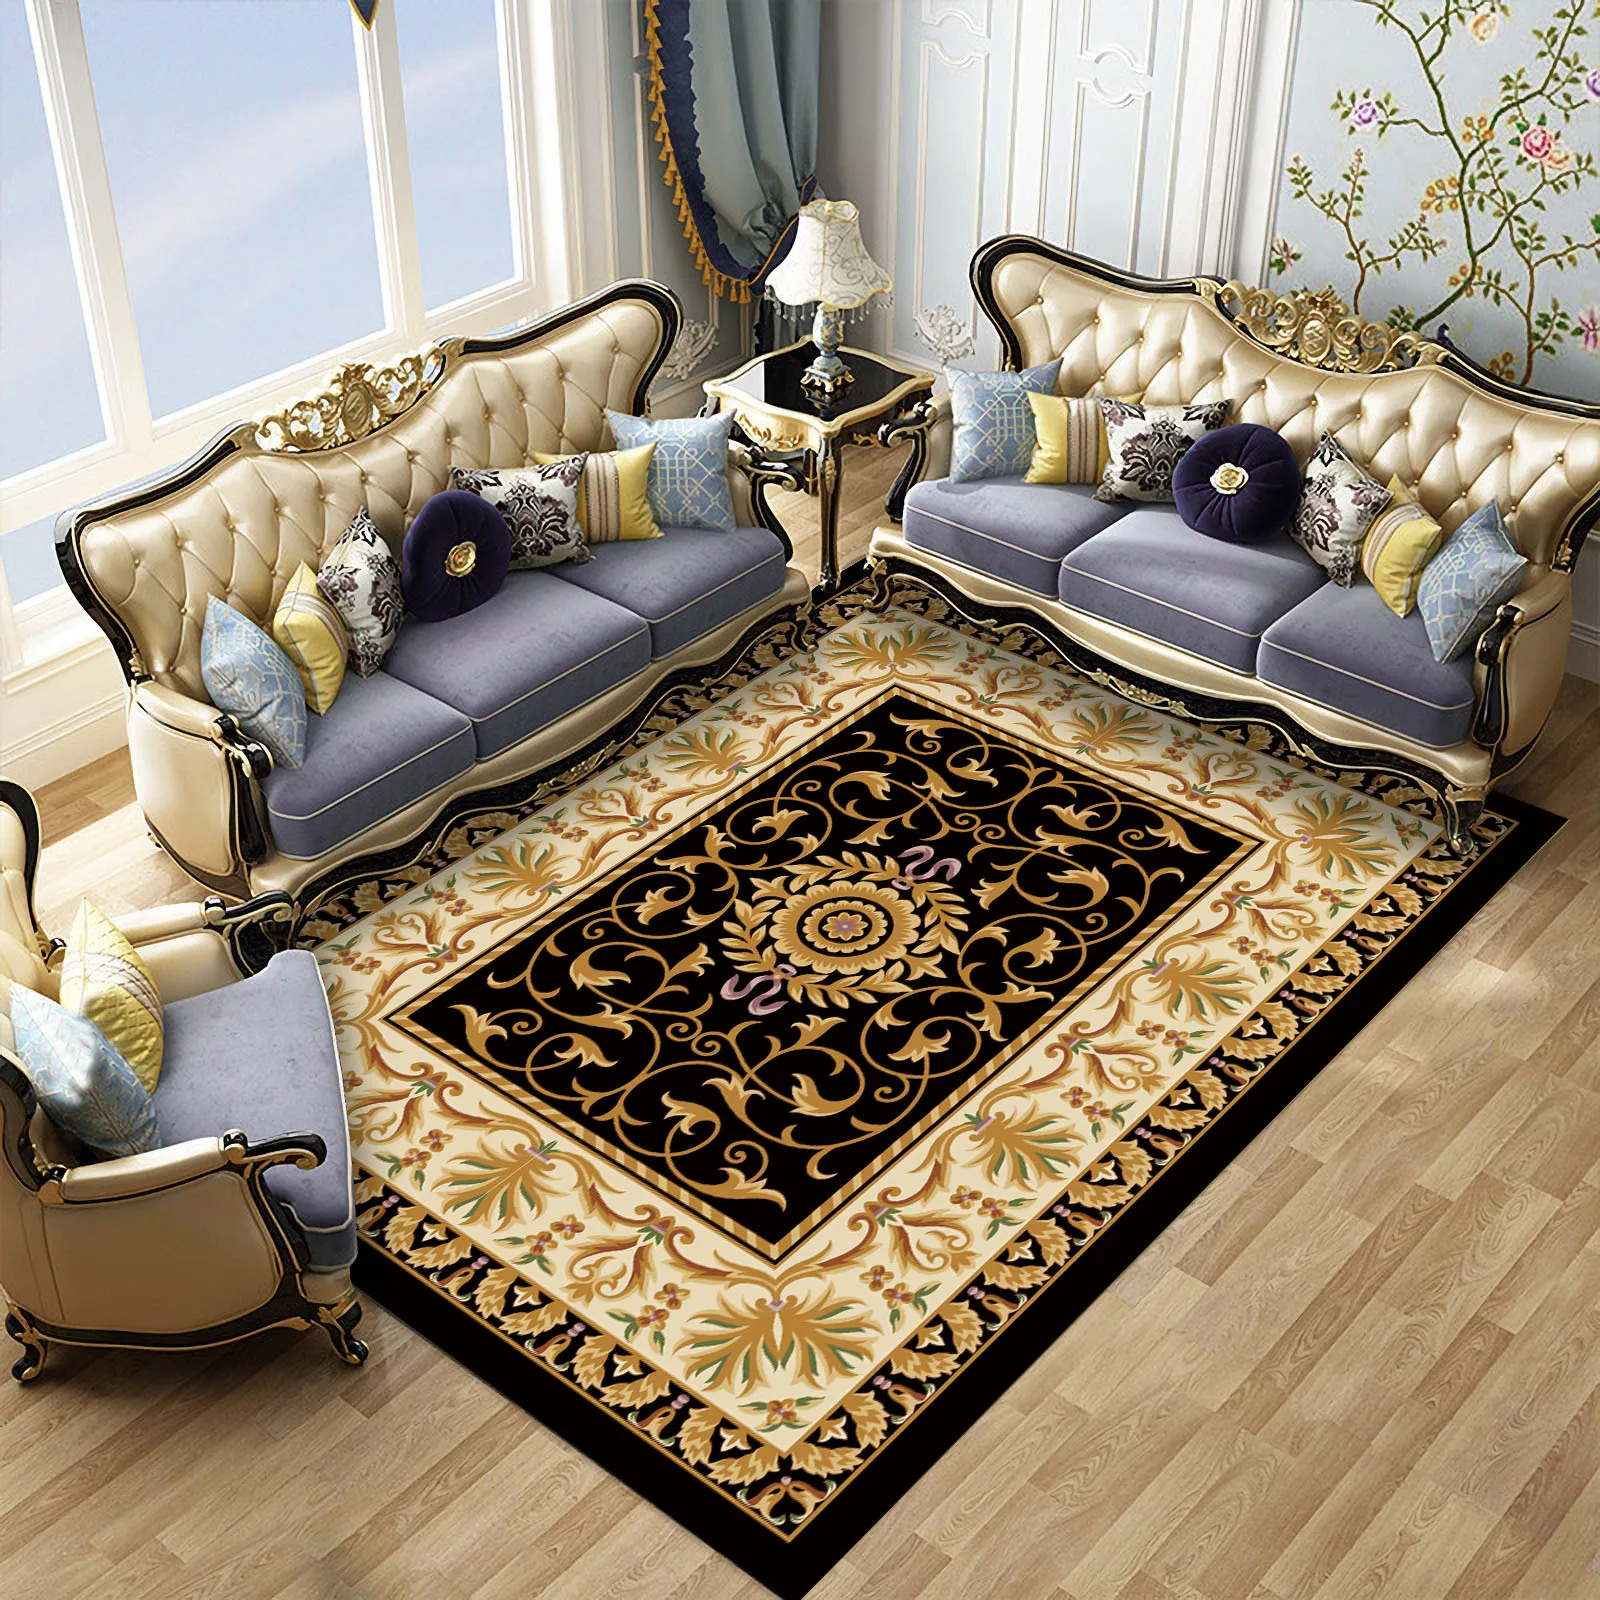 Европейский 7 видов стилей персидский художественный ковер для гостиной нескользящий кухонный коврик для спальни напольный коврик для гостиной домашний декор